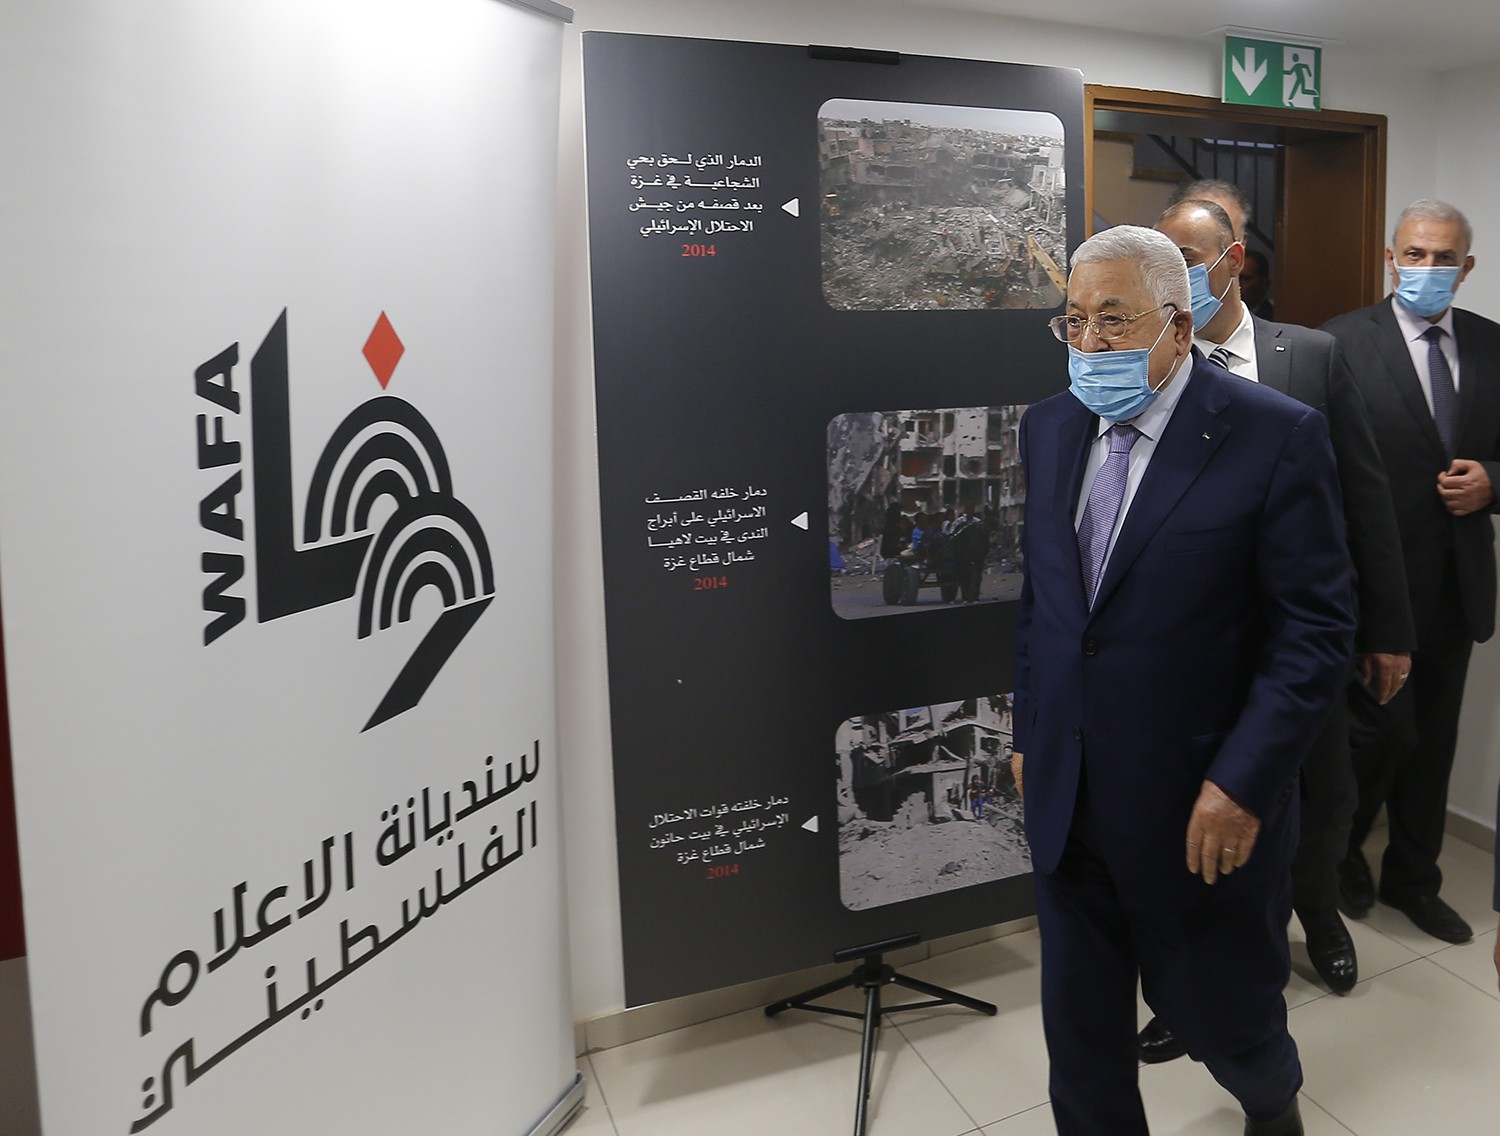 رام الله - الرئيس محمود عباس، يفتتح المقر المؤقت لوكالة الانباء والمعلومات الفلسطينية - وفا 4.jpg